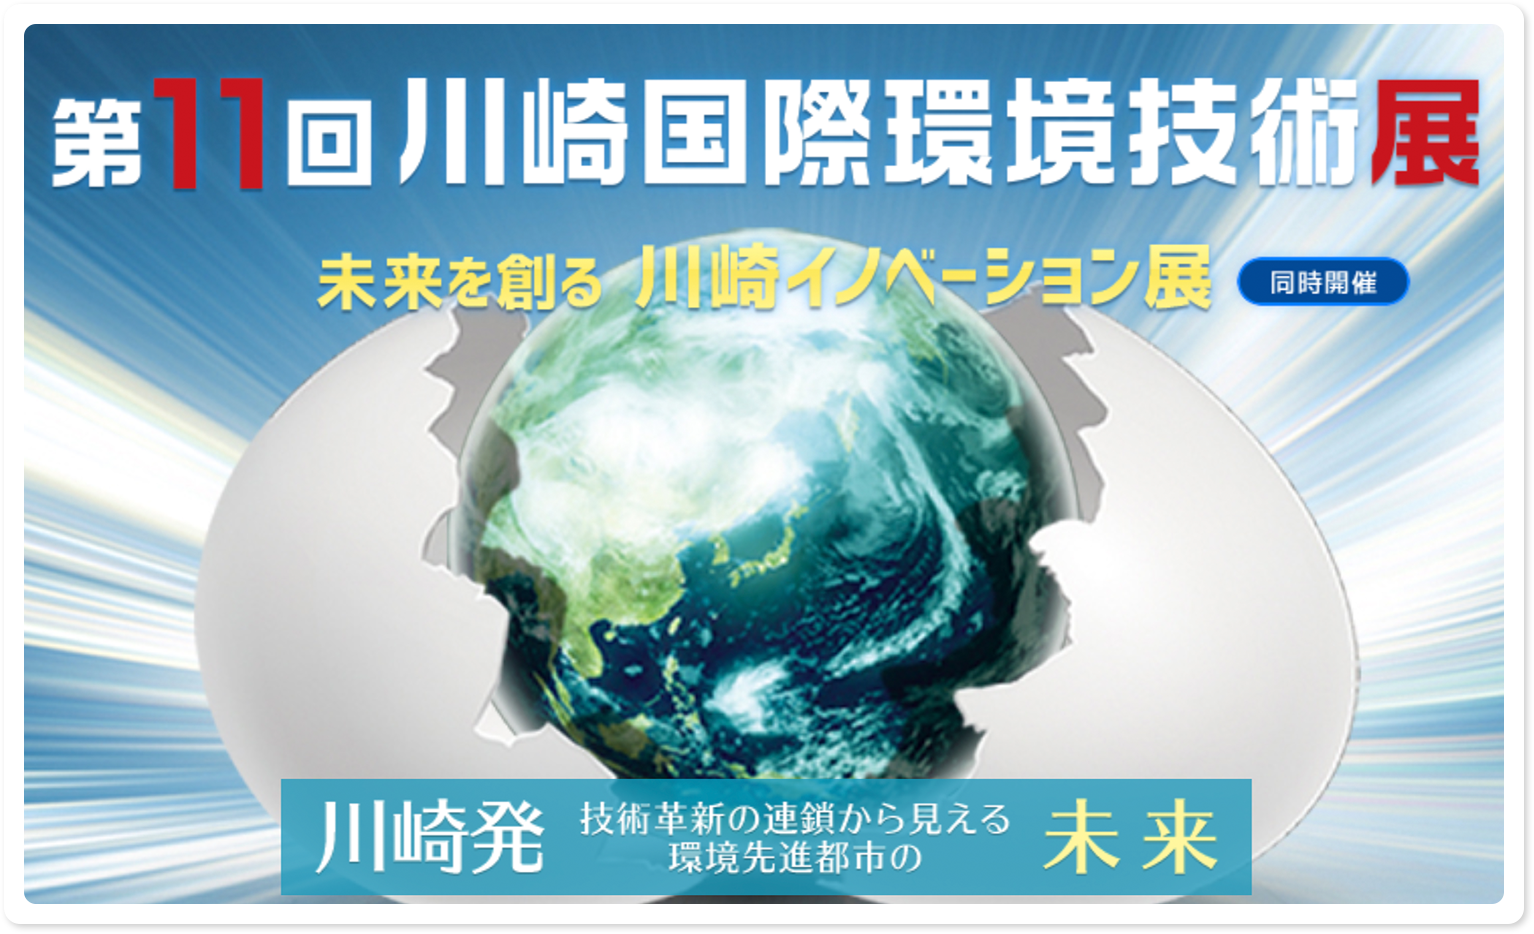 第11回川崎国際環境技術展